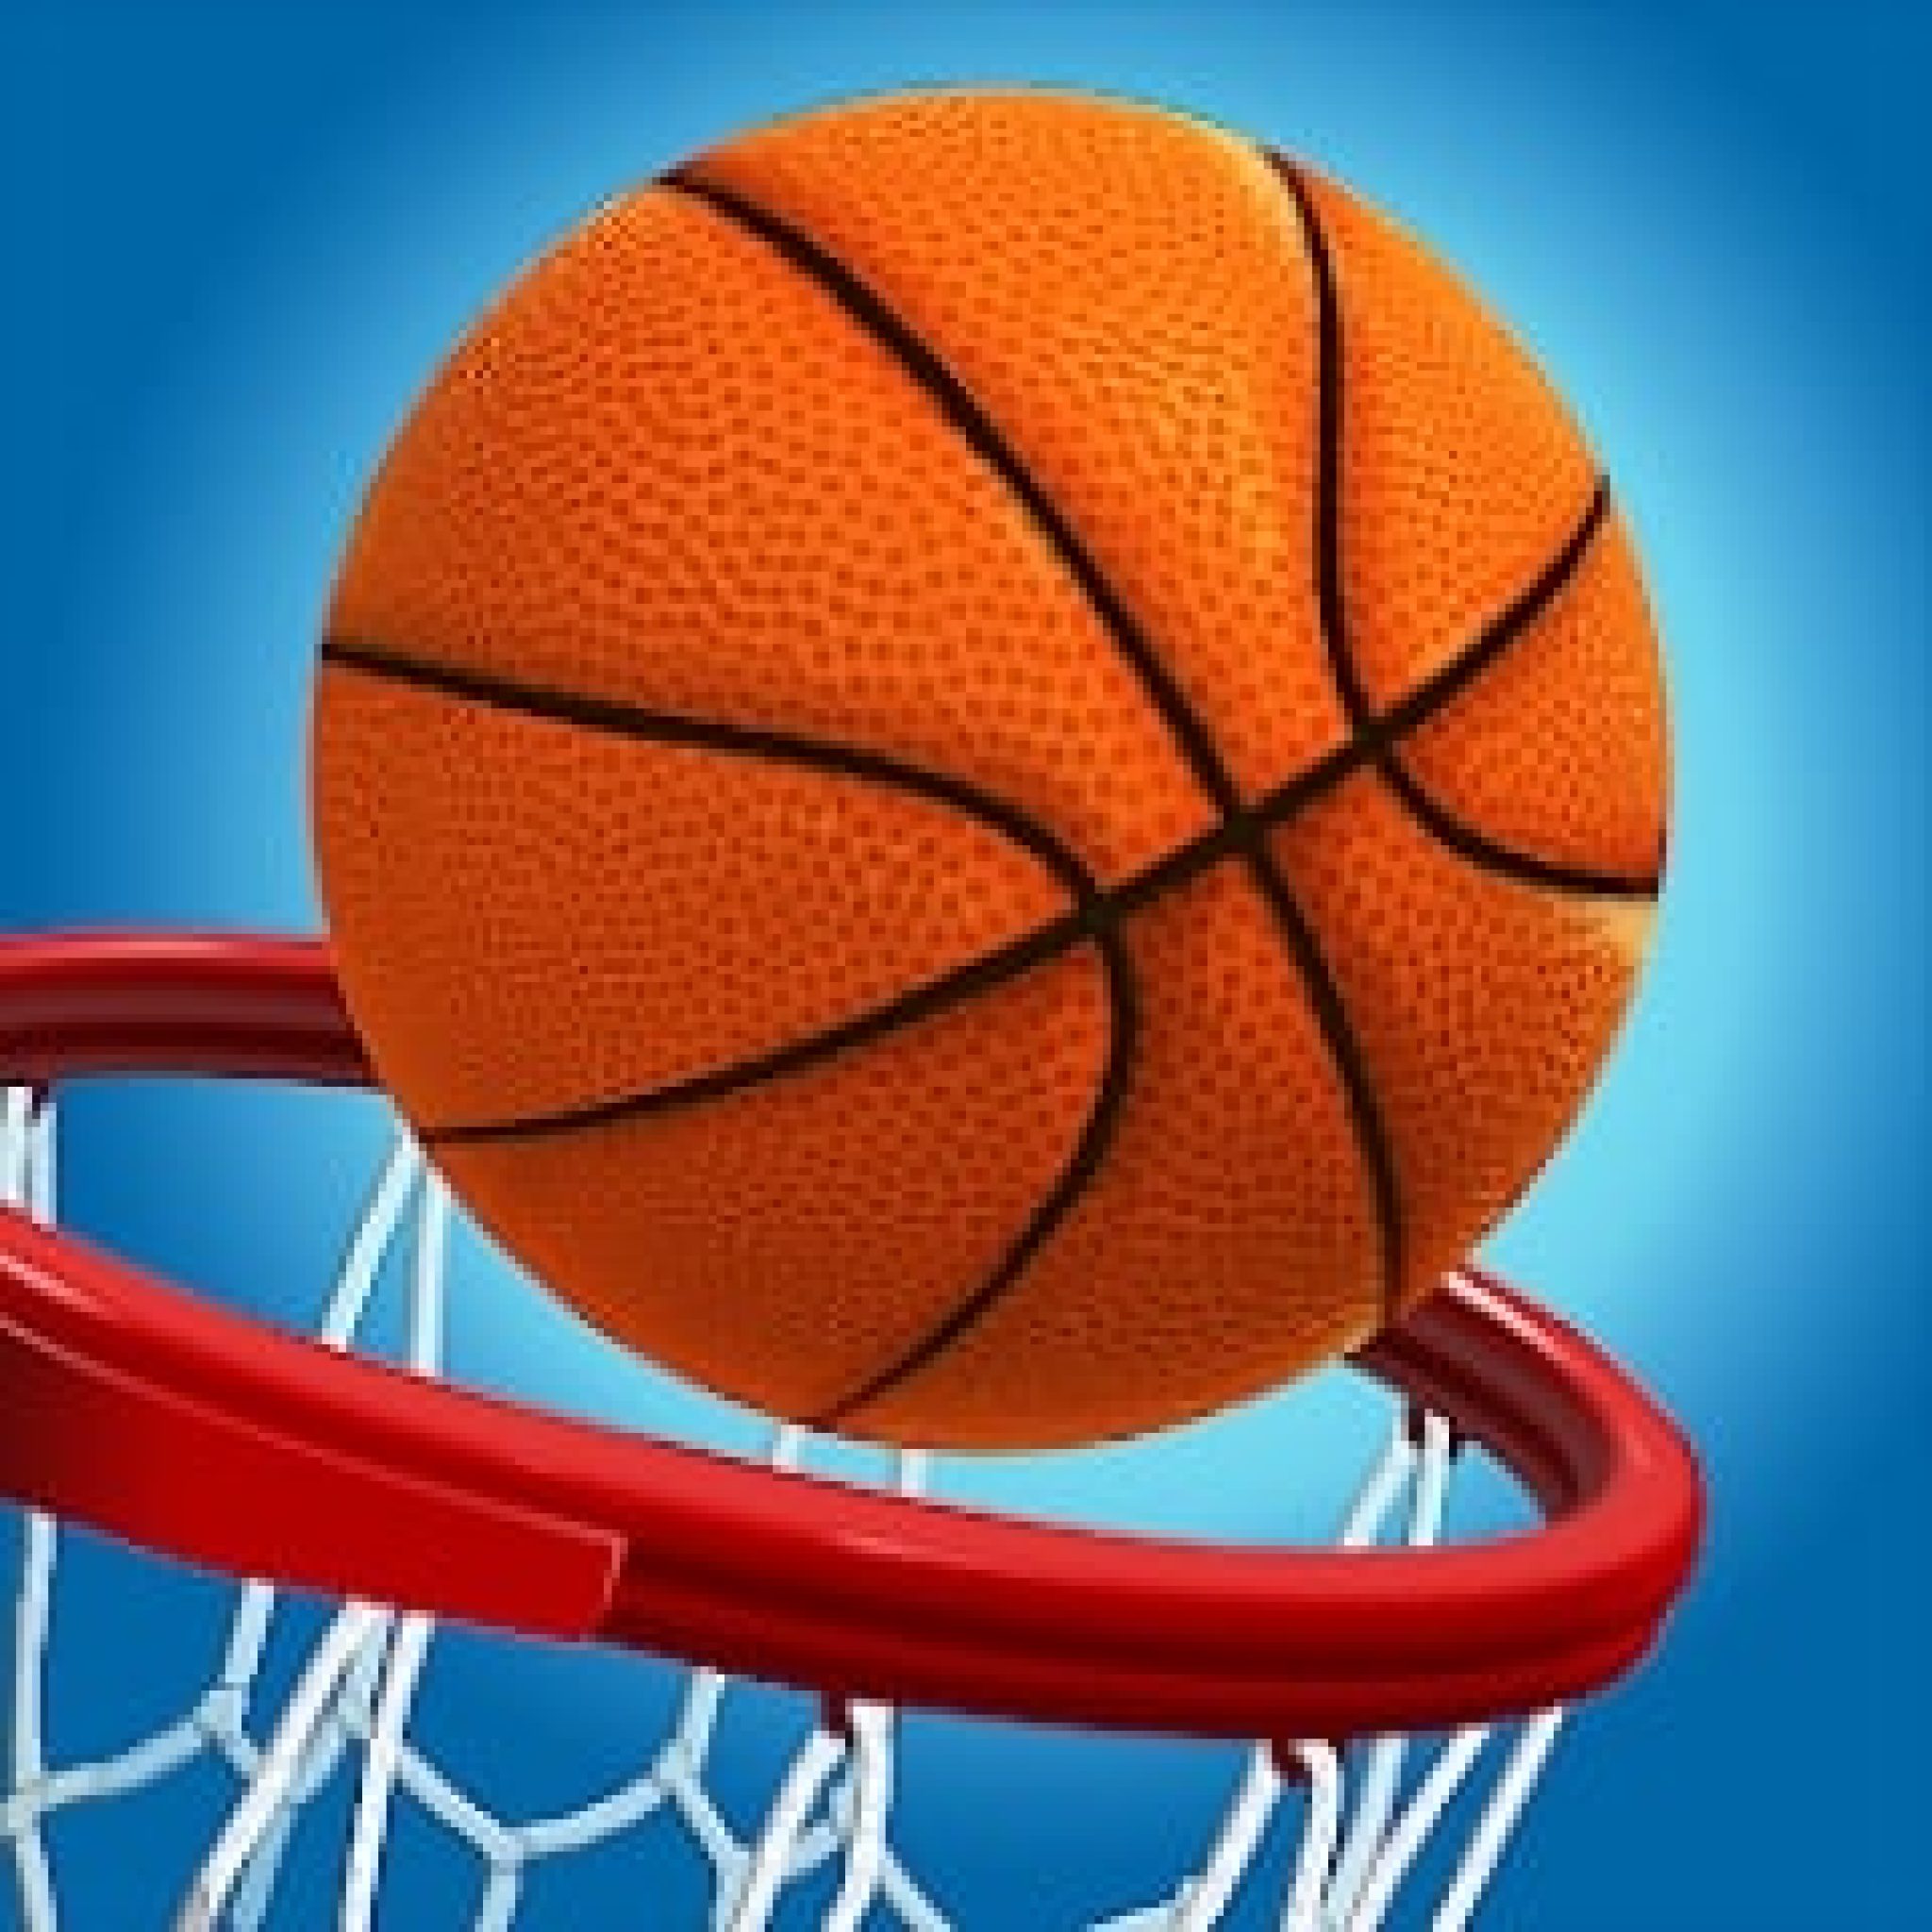 Спортивный мяч в баскетболе. Баскетбольный мяч и кольцо. Мяч в кольце. Баскетбол мяч в кольце. Баскетбольный мяч в корзине.